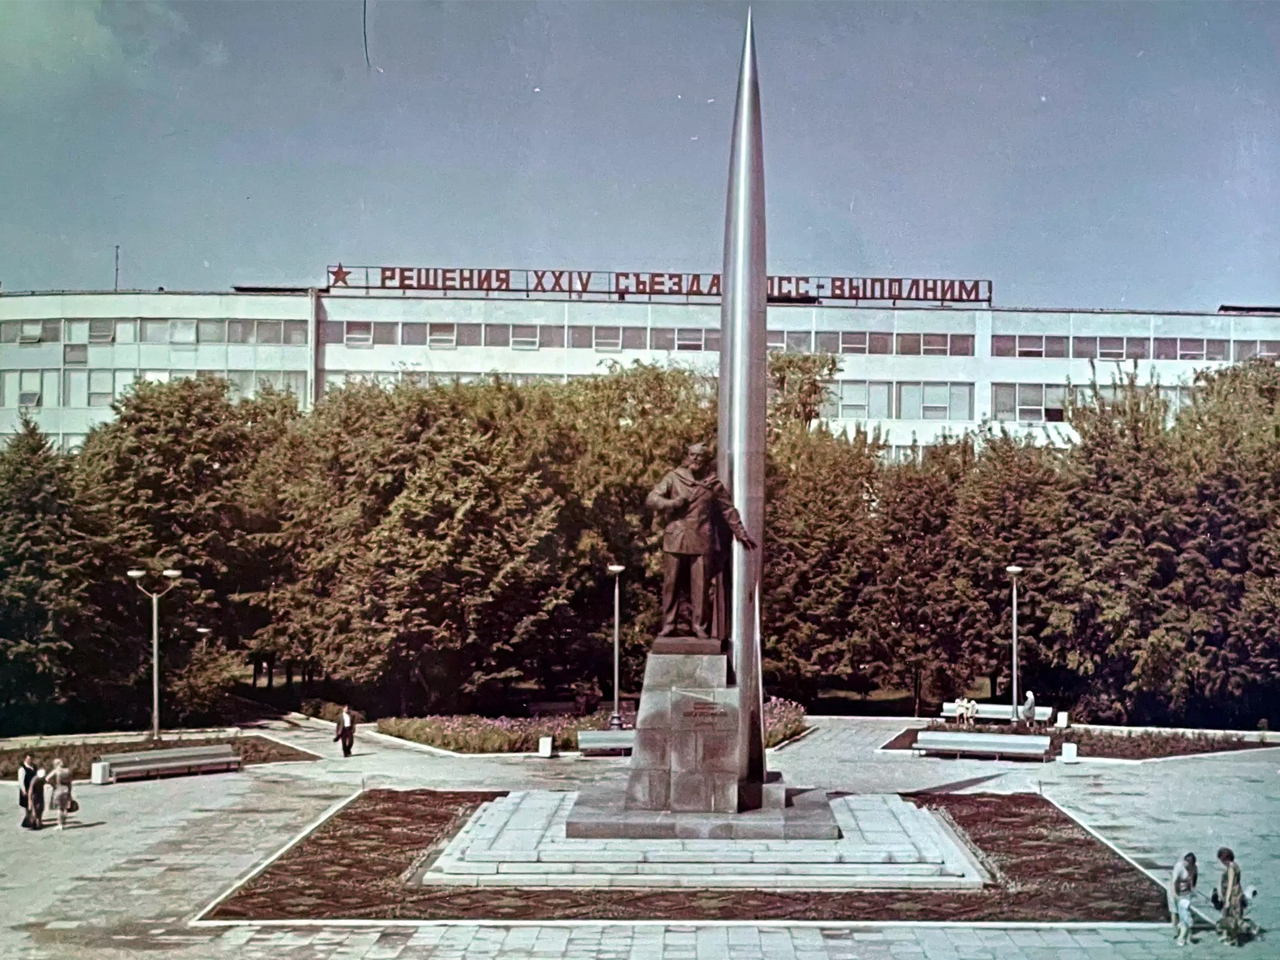 Памятник Циолковскому на фоне здания ВНИИМЭТ, 1971–1975 годы.
Фотография из архива Эдуарда Малолетнева